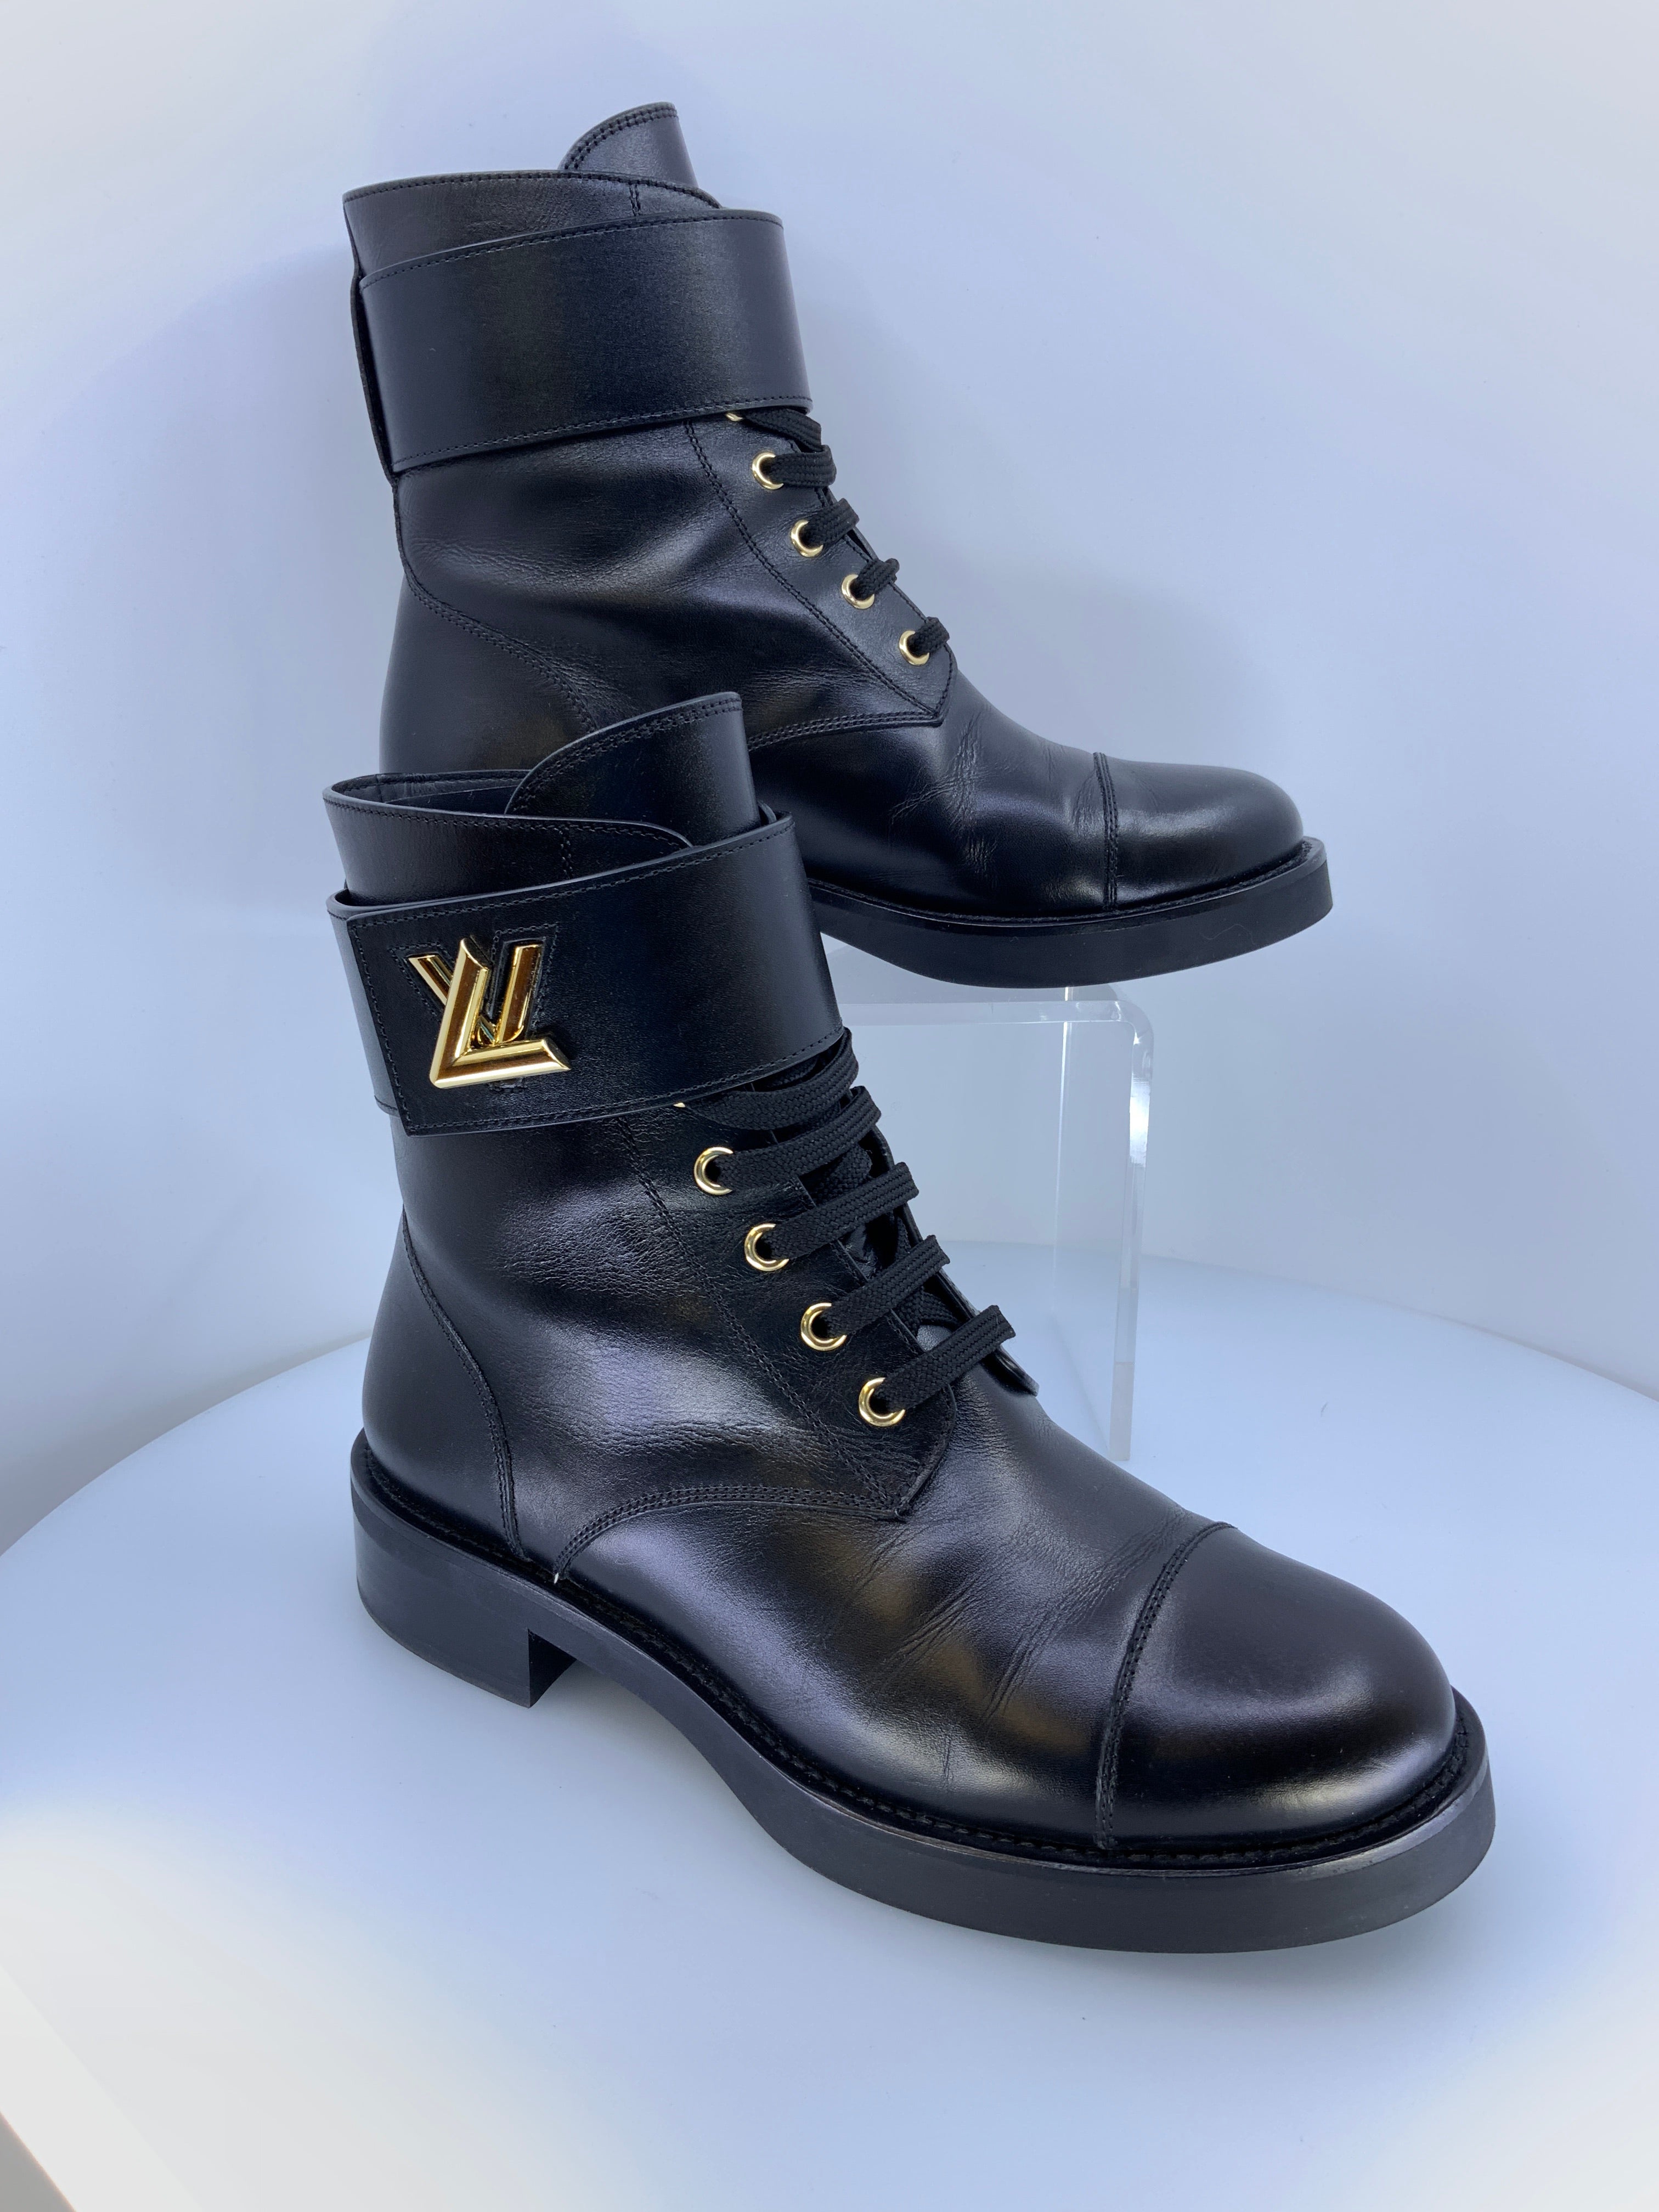 Louis Vuitton Black Leather Wonderland Ranger Ankle Length Combat Boots  Size 38 Louis Vuitton